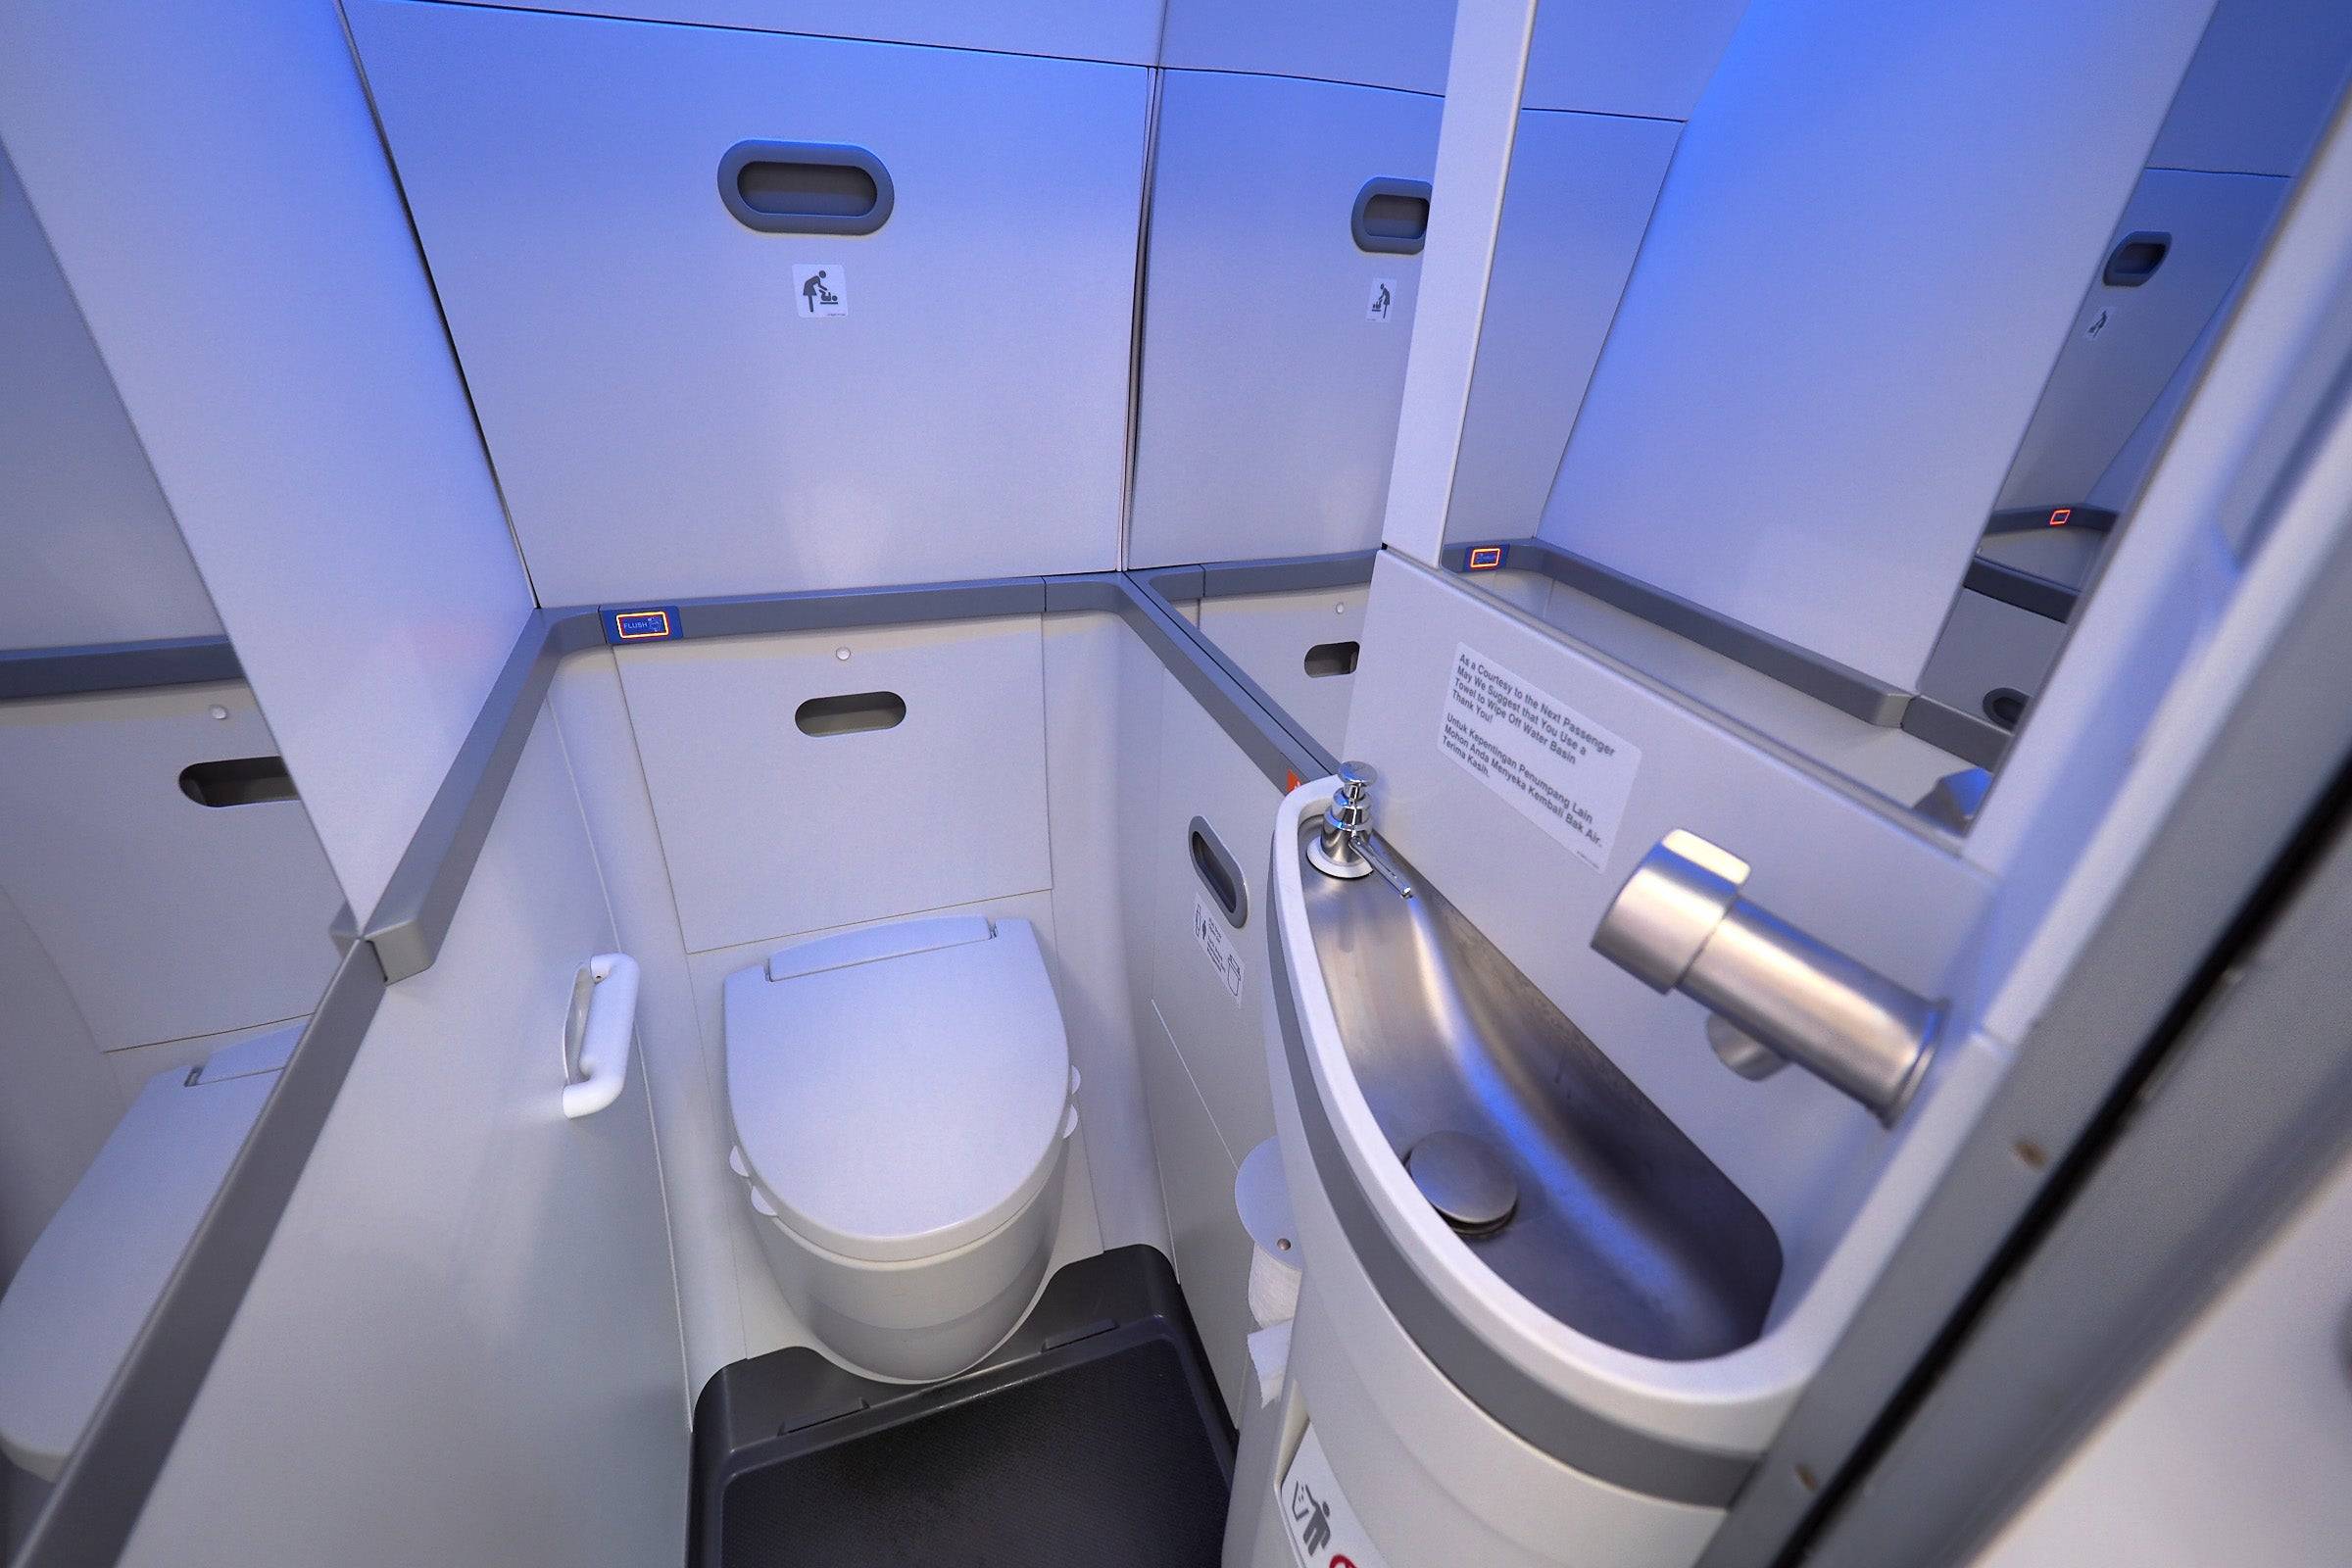 Как выглядят туалеты в самолетах. как работает туалет в самолете и что нужно знать перед использованием. вода в самолетах, что и как